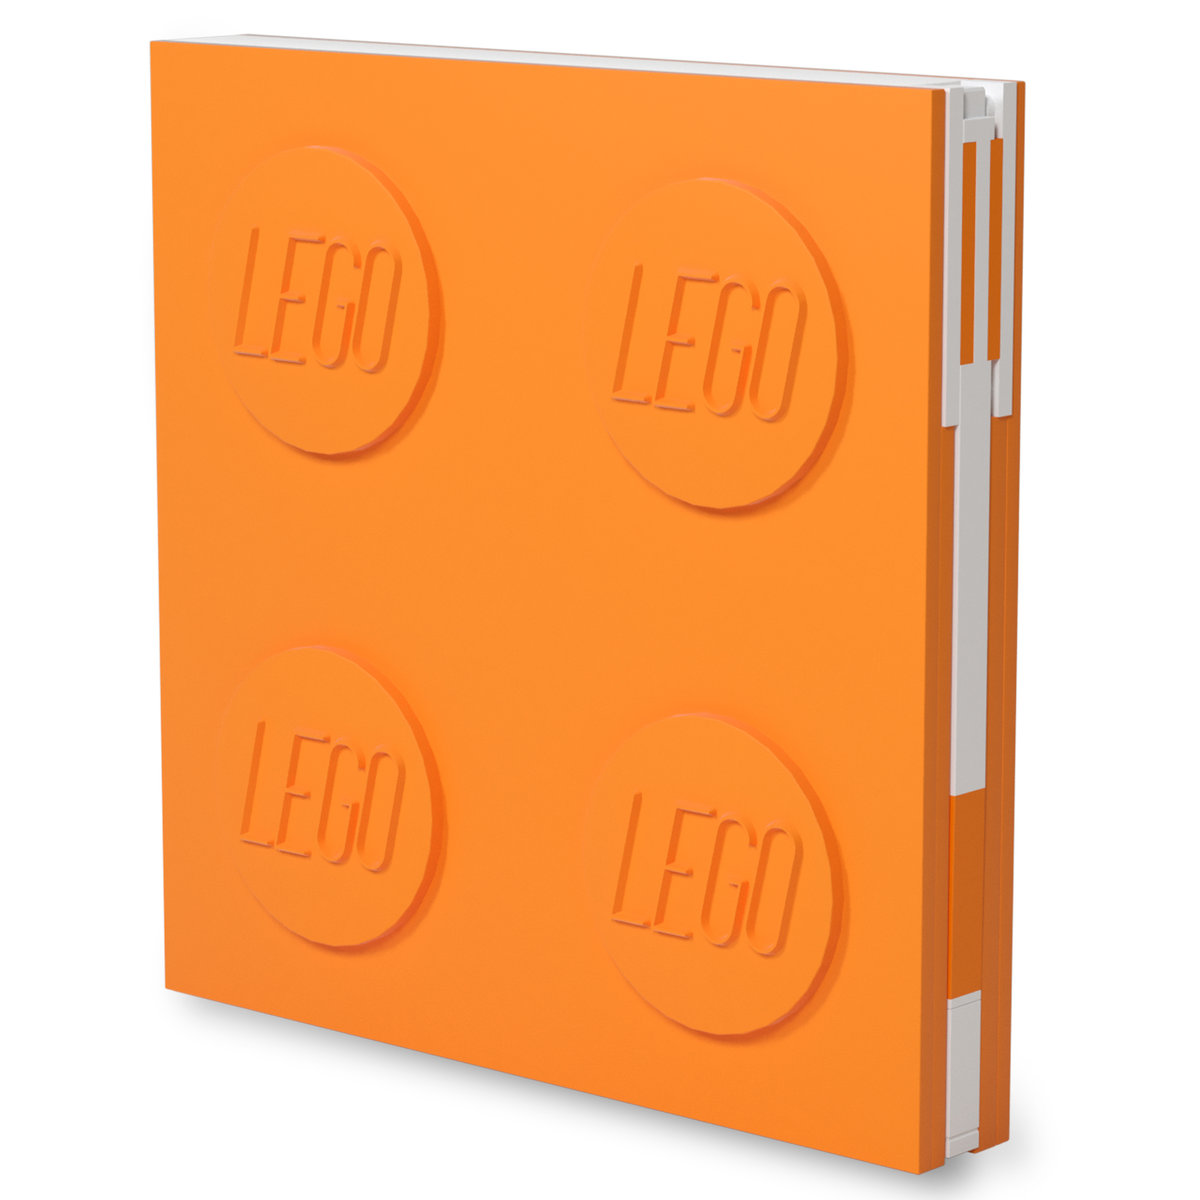 LEGO notatnik z długopisem żelowym w postaci klipsa pomarańczowy